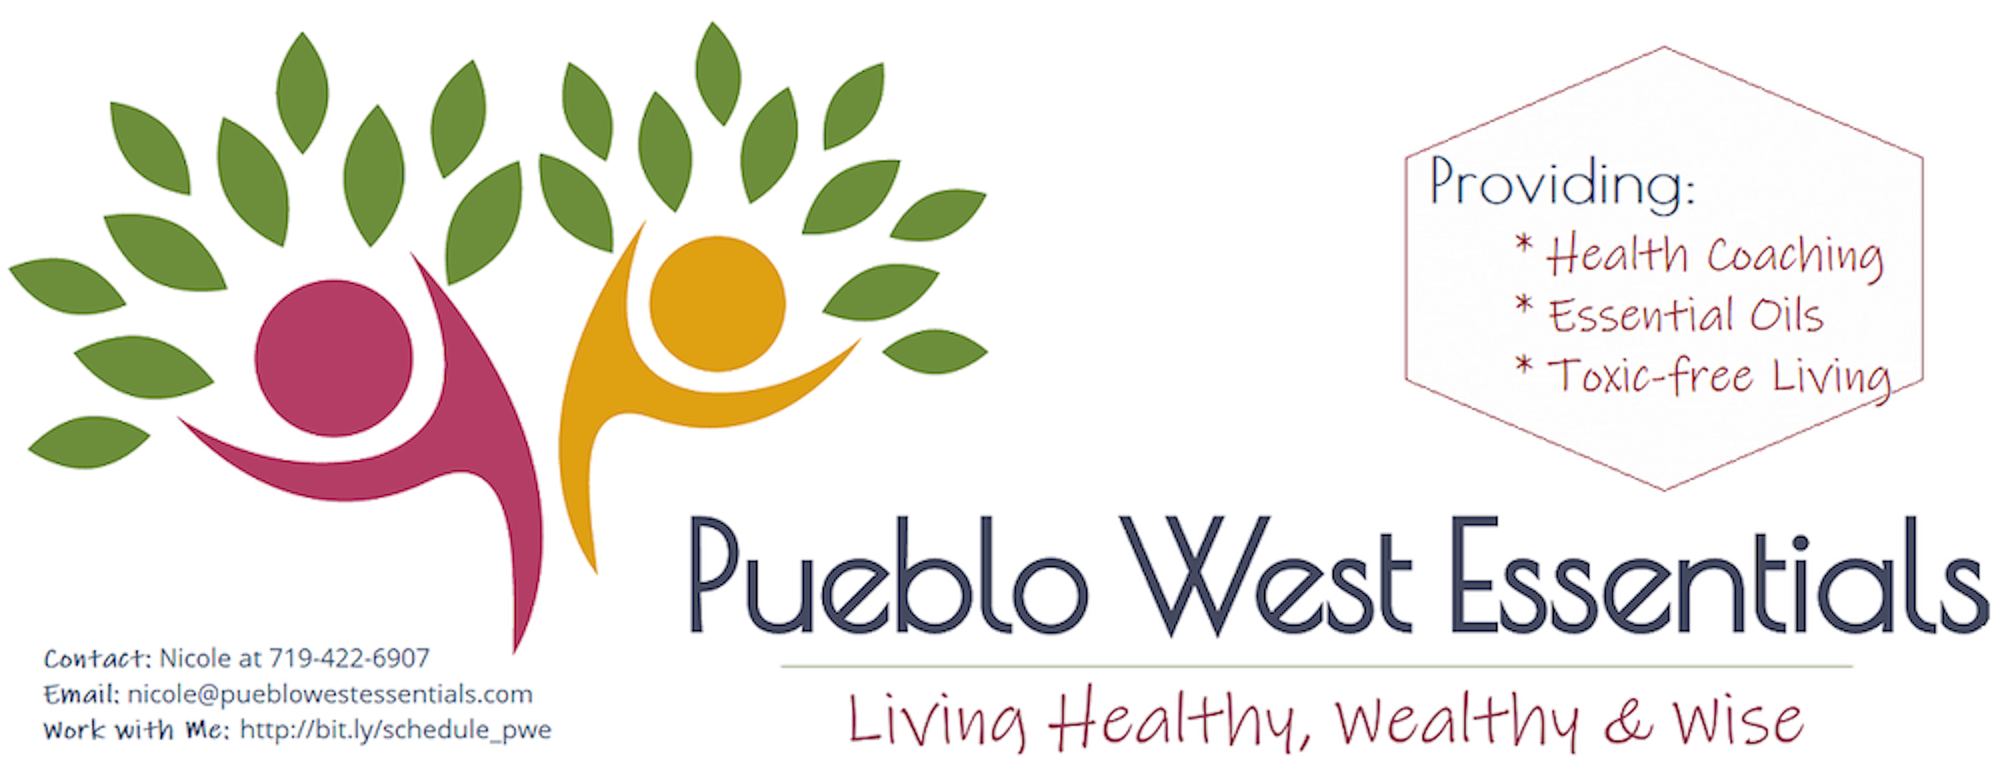 Nicole Taylor @ Pueblo West Essentials